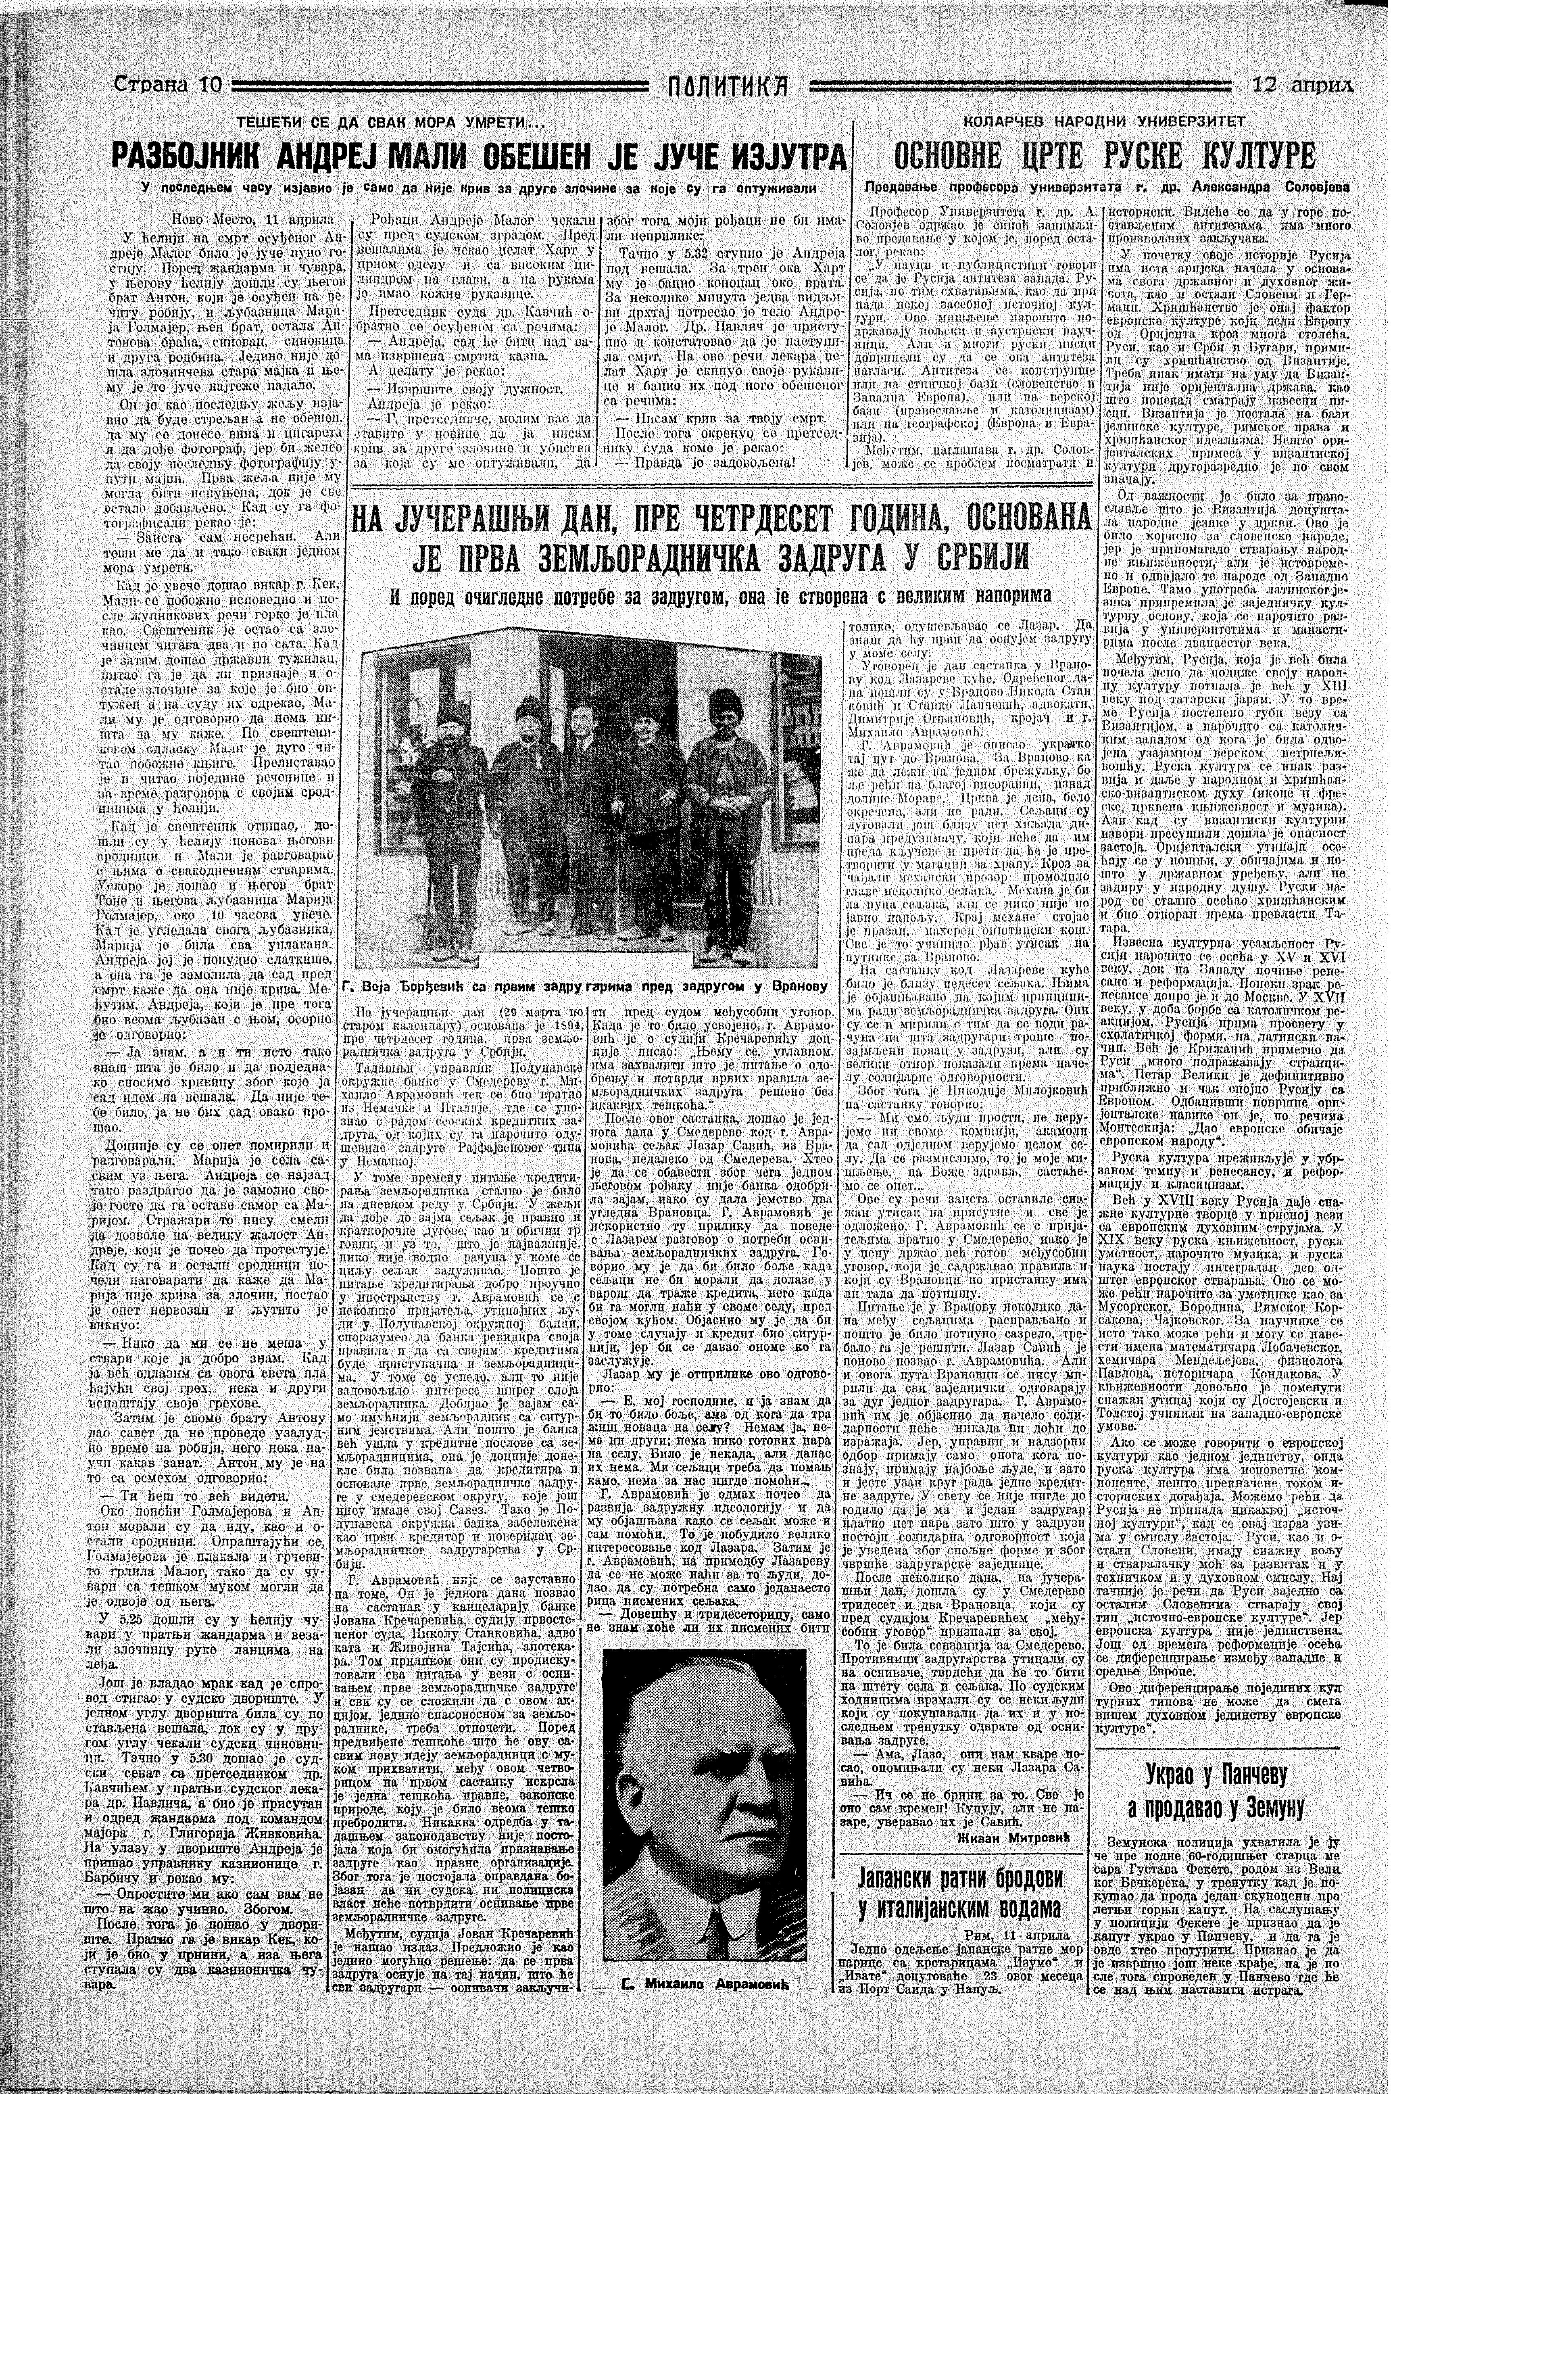 Razbojnik obešen juče, Politika, 12.04.1934.